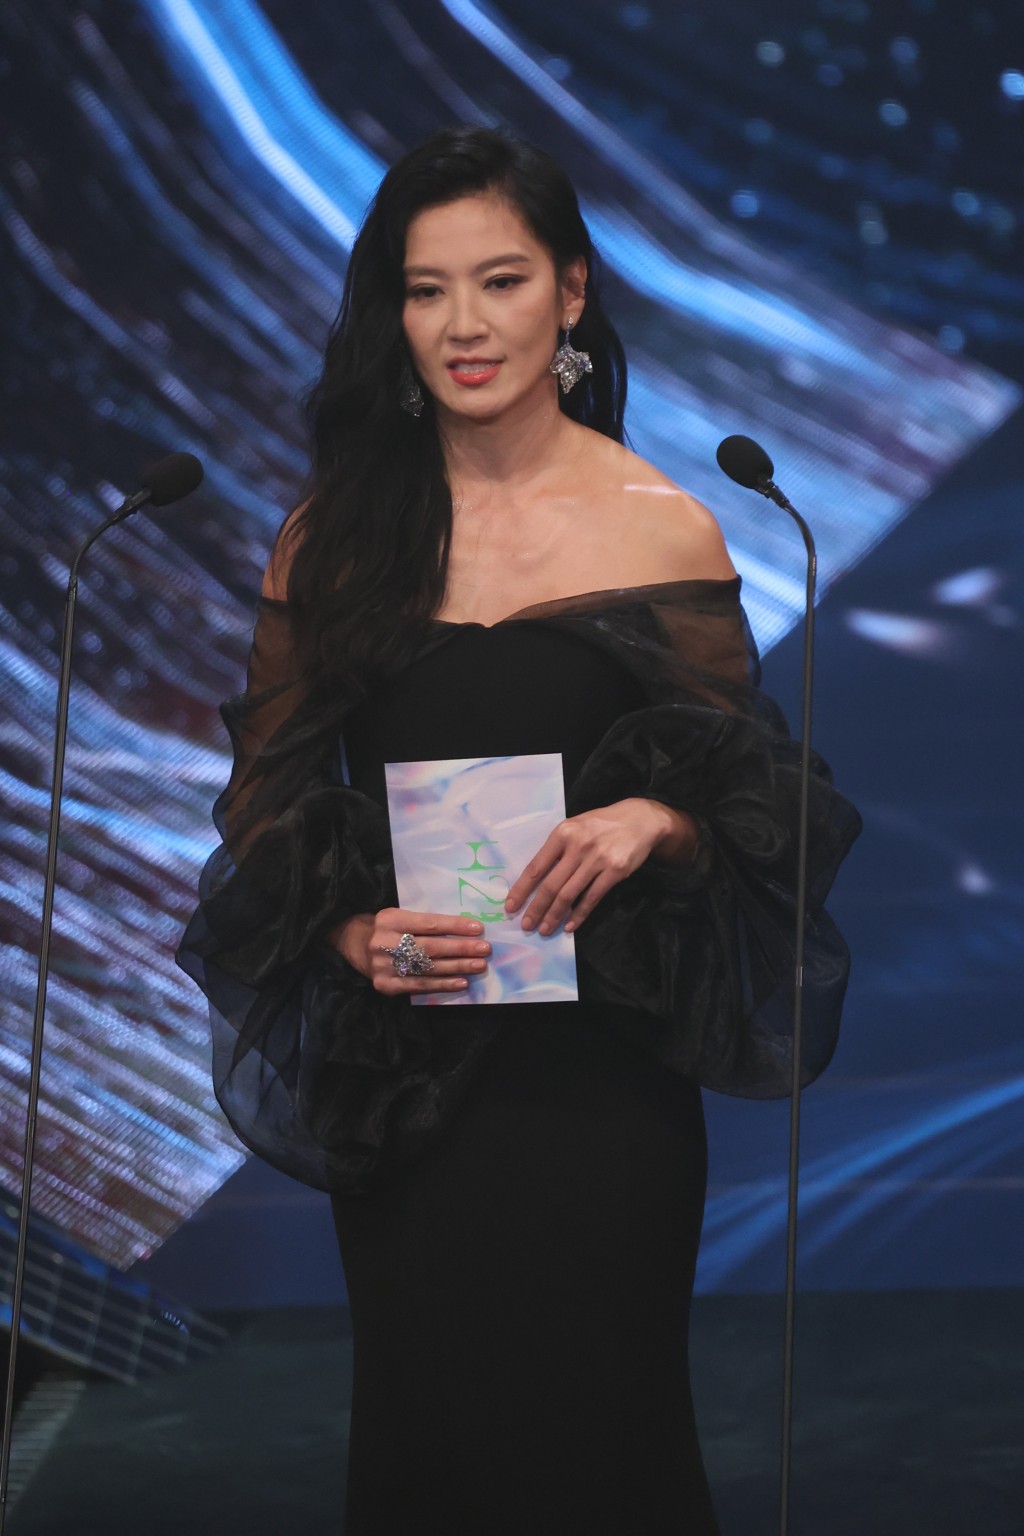 久未露面的台灣女星林熙蕾負責頒發獎項「最佳男配角」。  ​